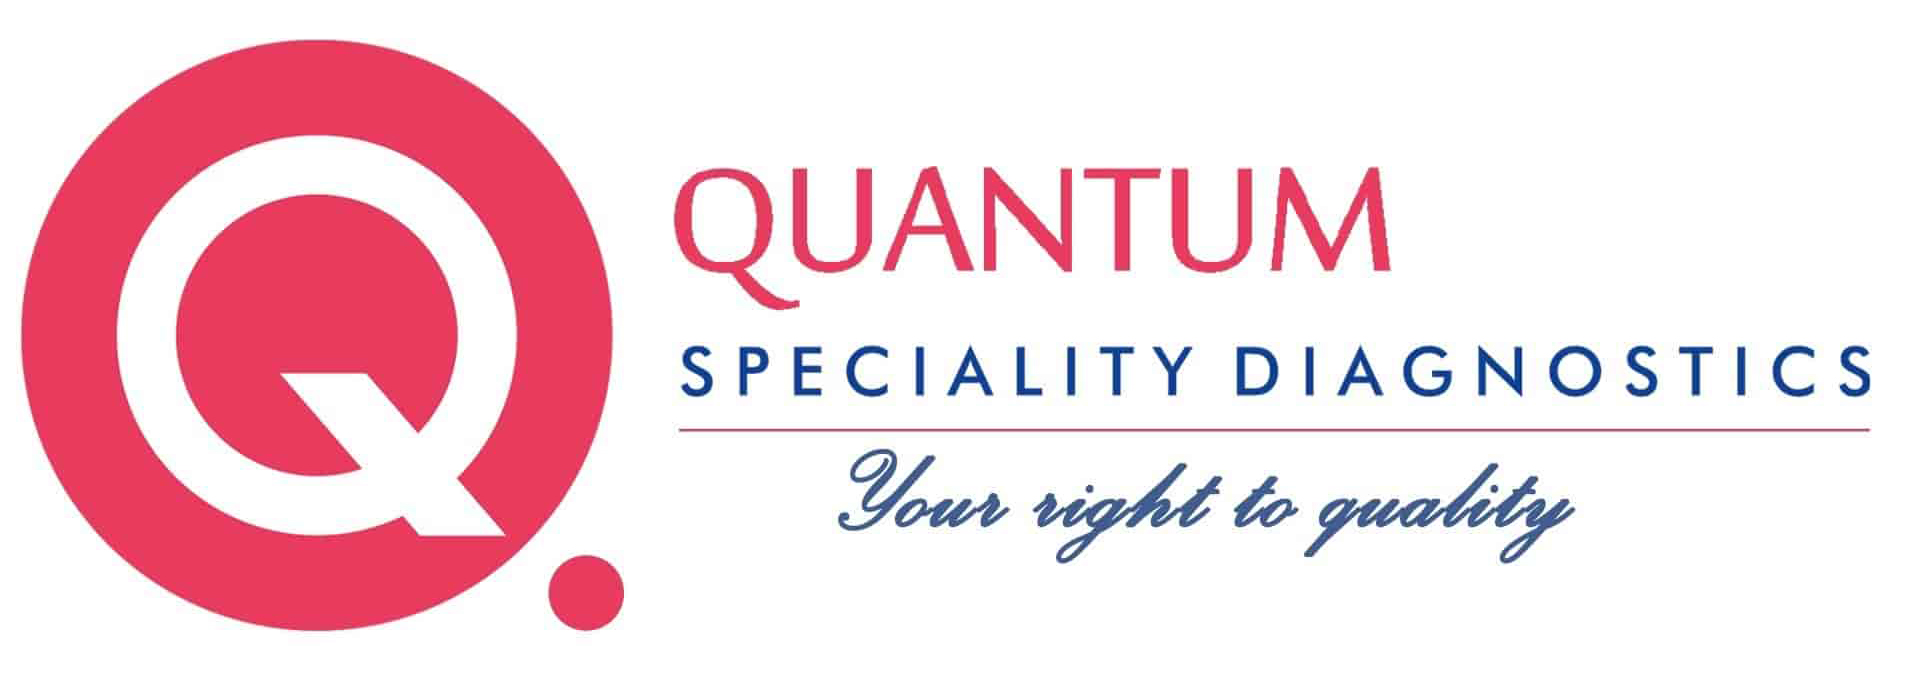 Quantum Diagnostics